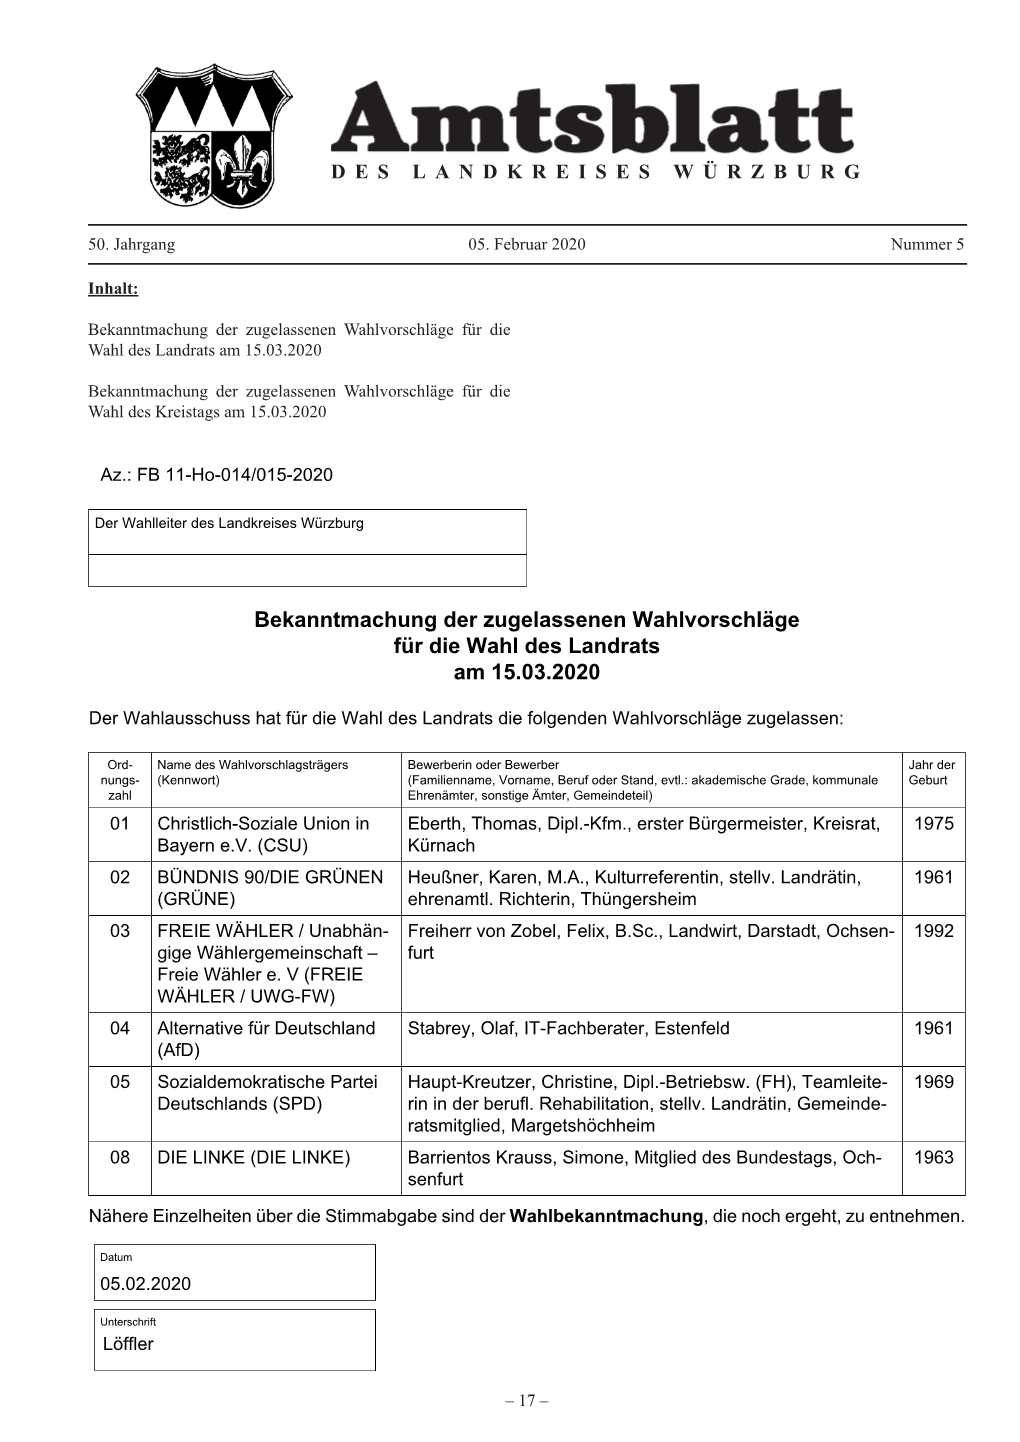 Bekanntmachung Der Zugelassenen Wahlvorschläge Für Die Wahl Des Landrats Am 15.03.2020